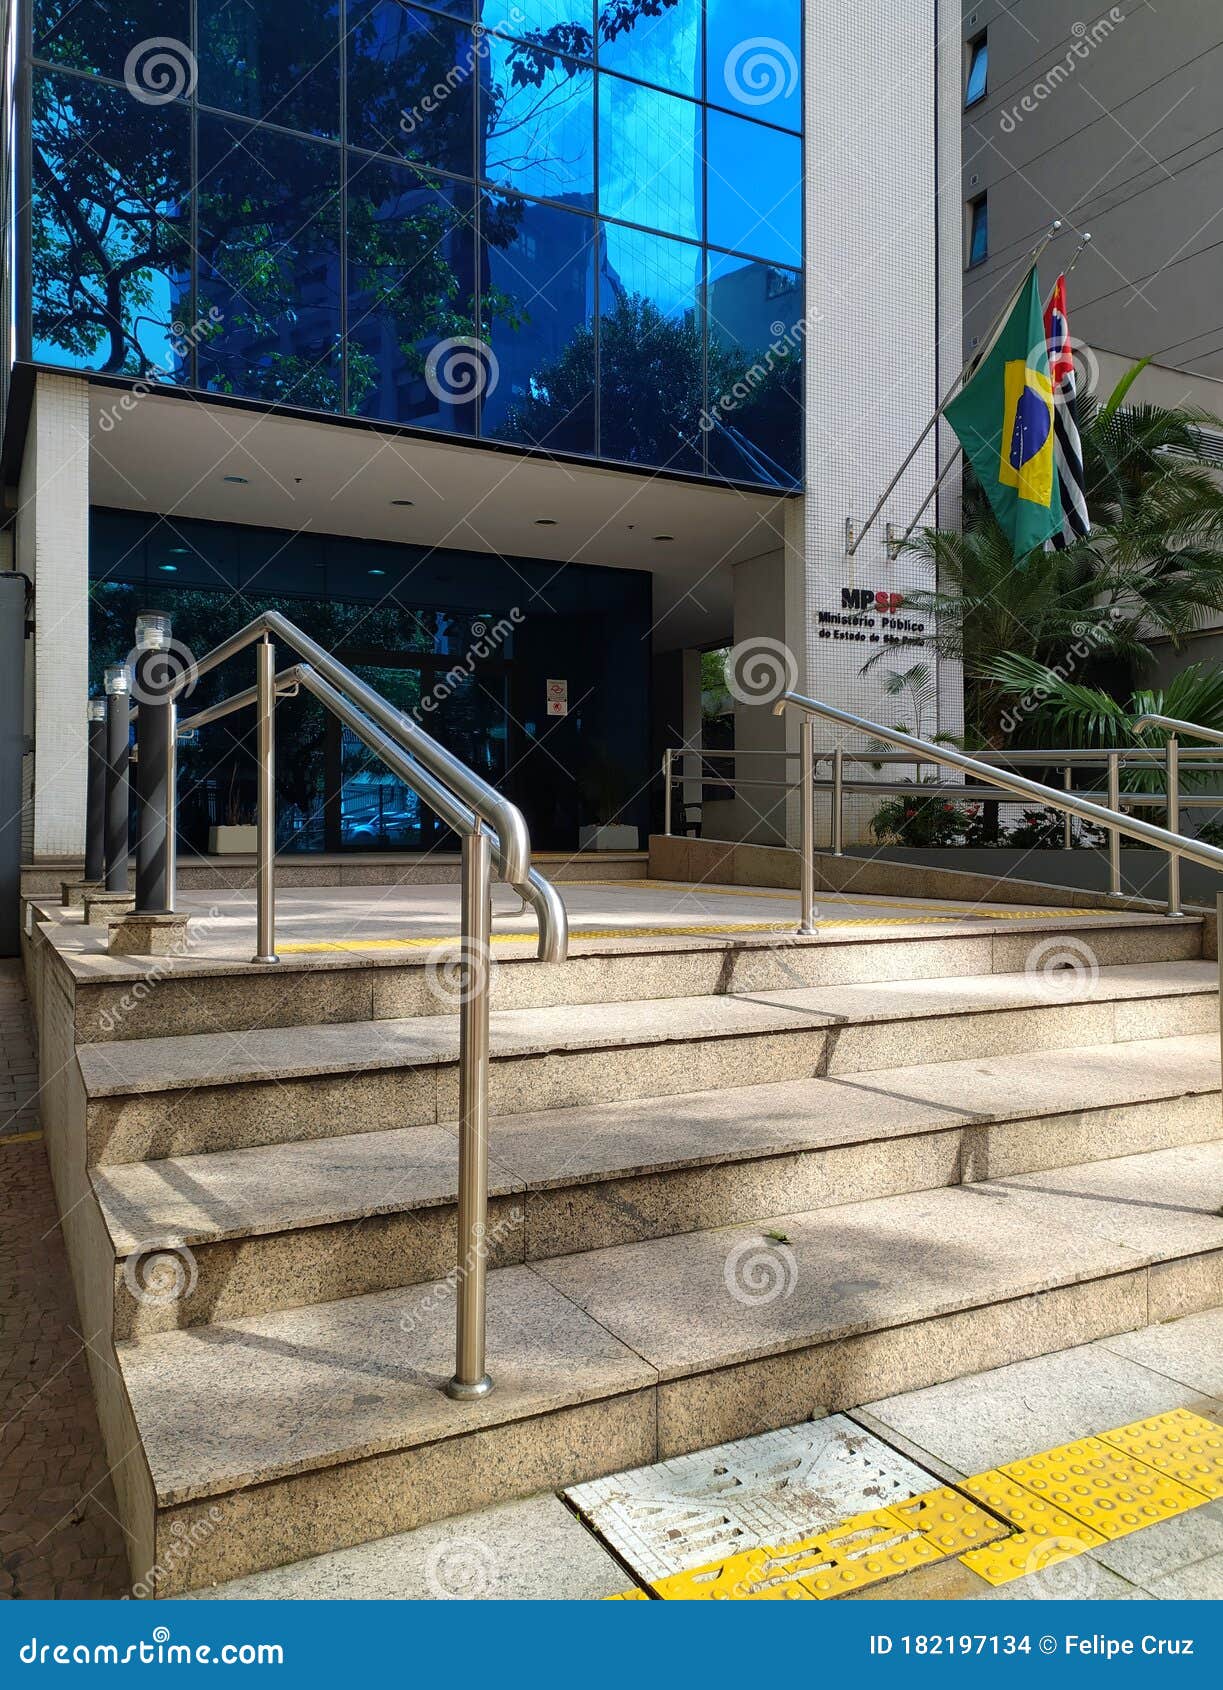 Ministério Público do Estado de São Paulo